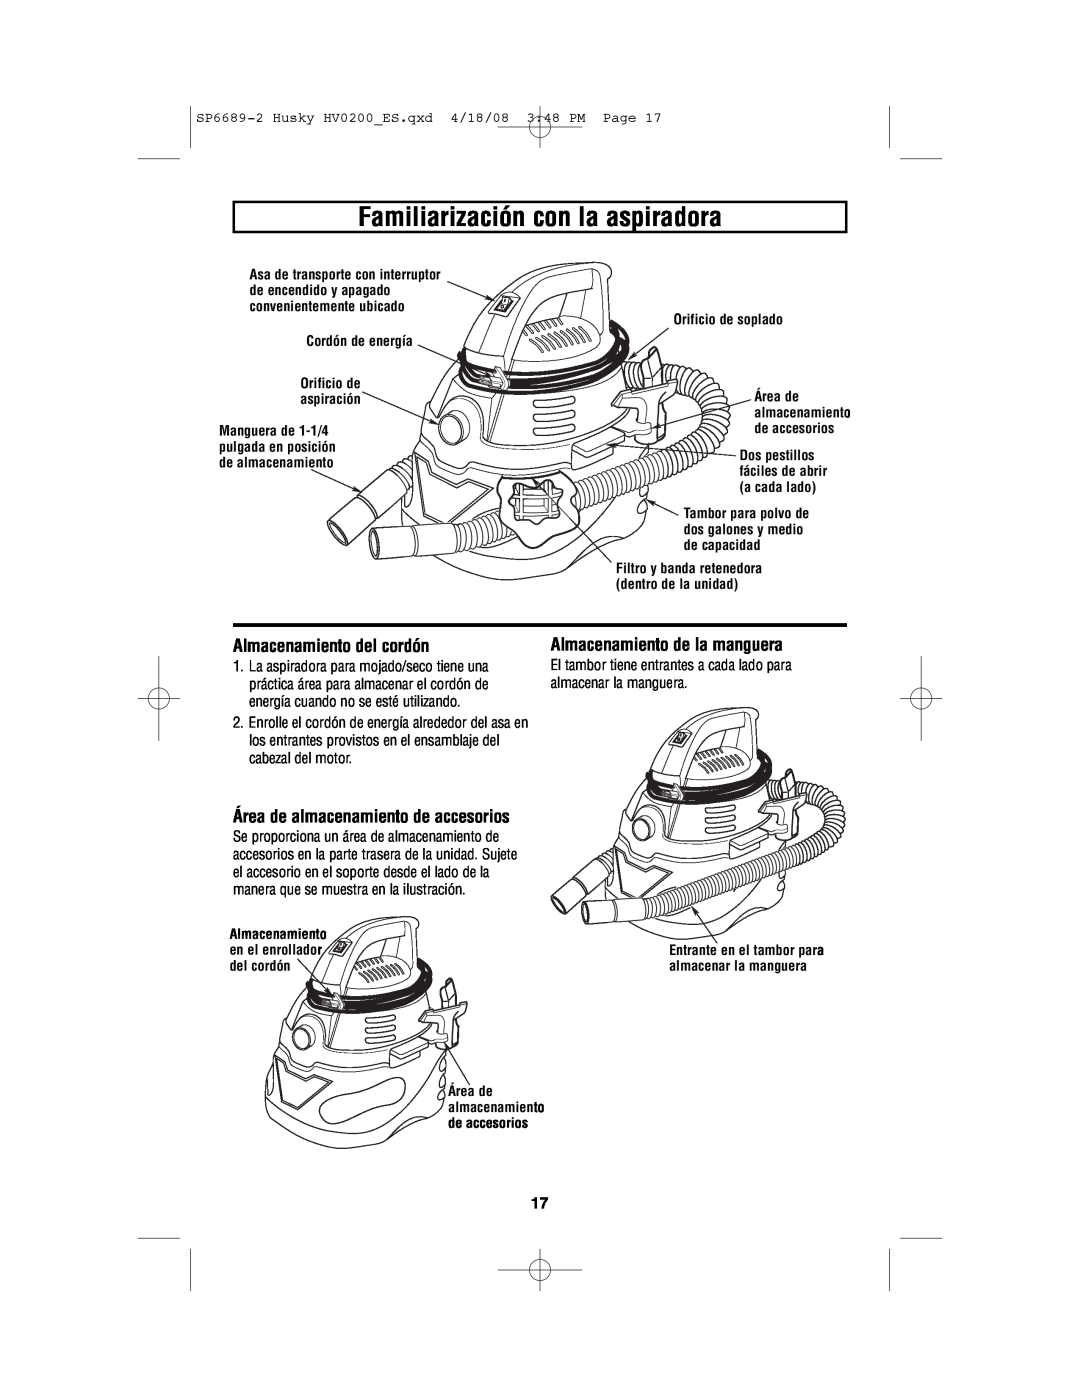 Husky HV02000 manual Familiarización con la aspiradora, Almacenamiento del cordón, Almacenamiento de la manguera 